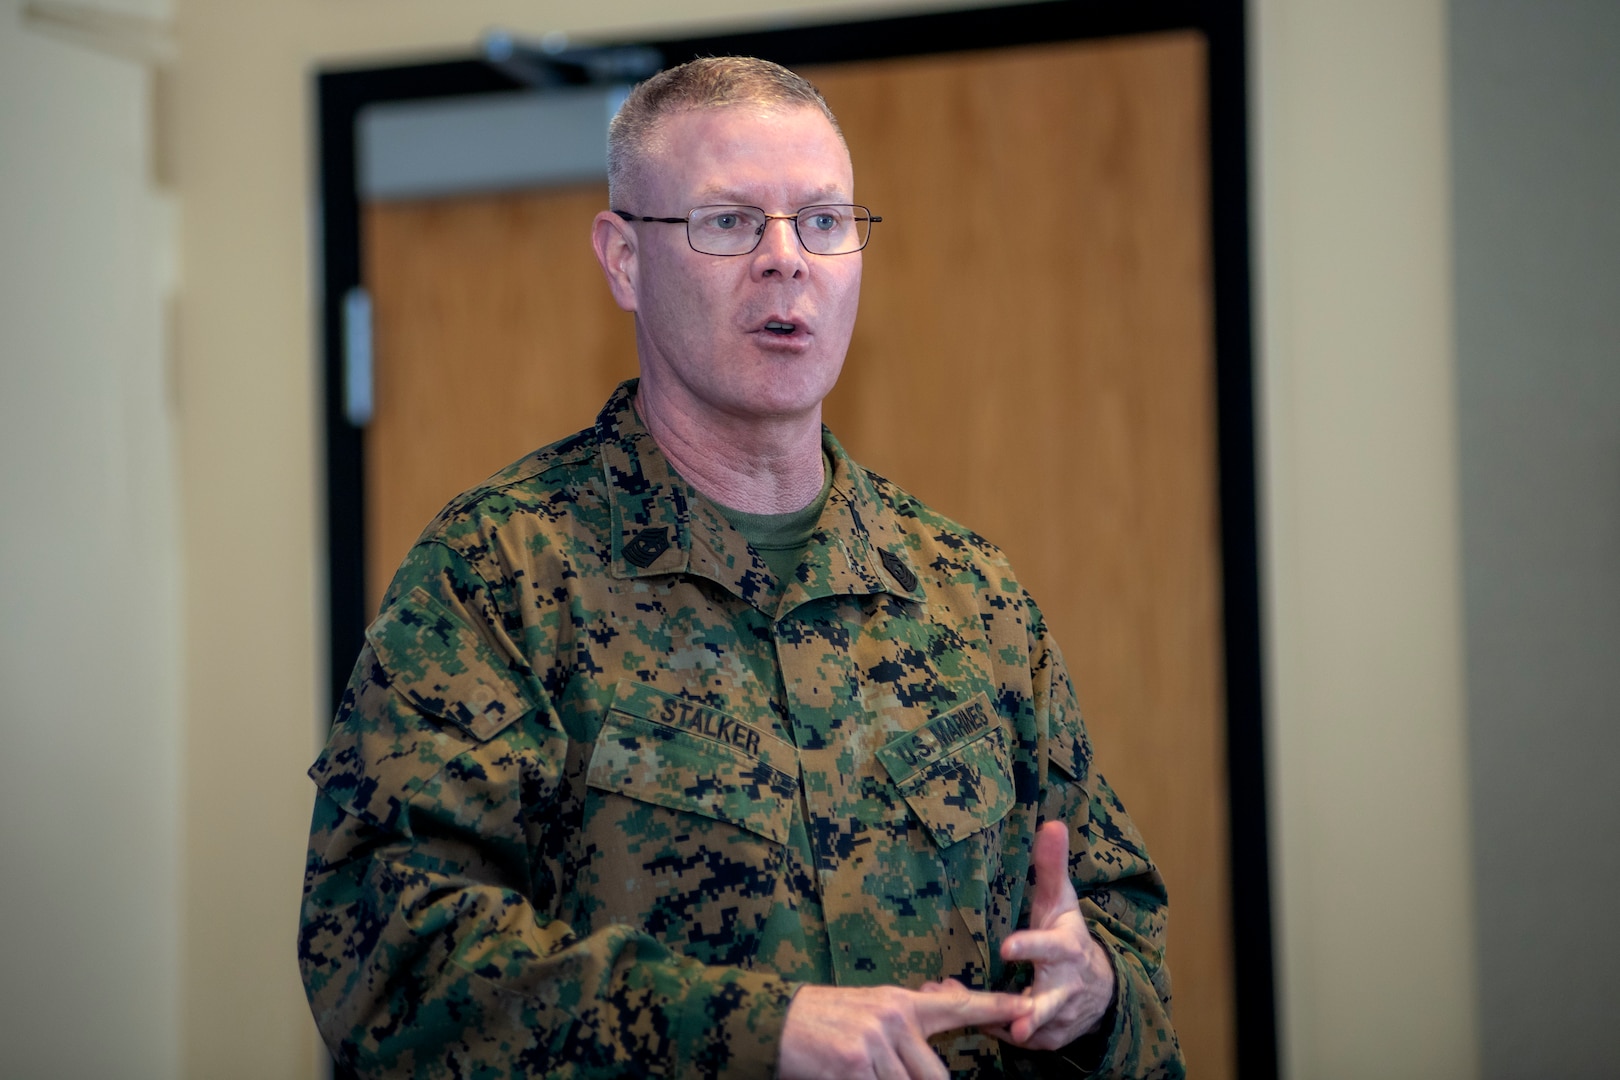 Marine in uniform speaking